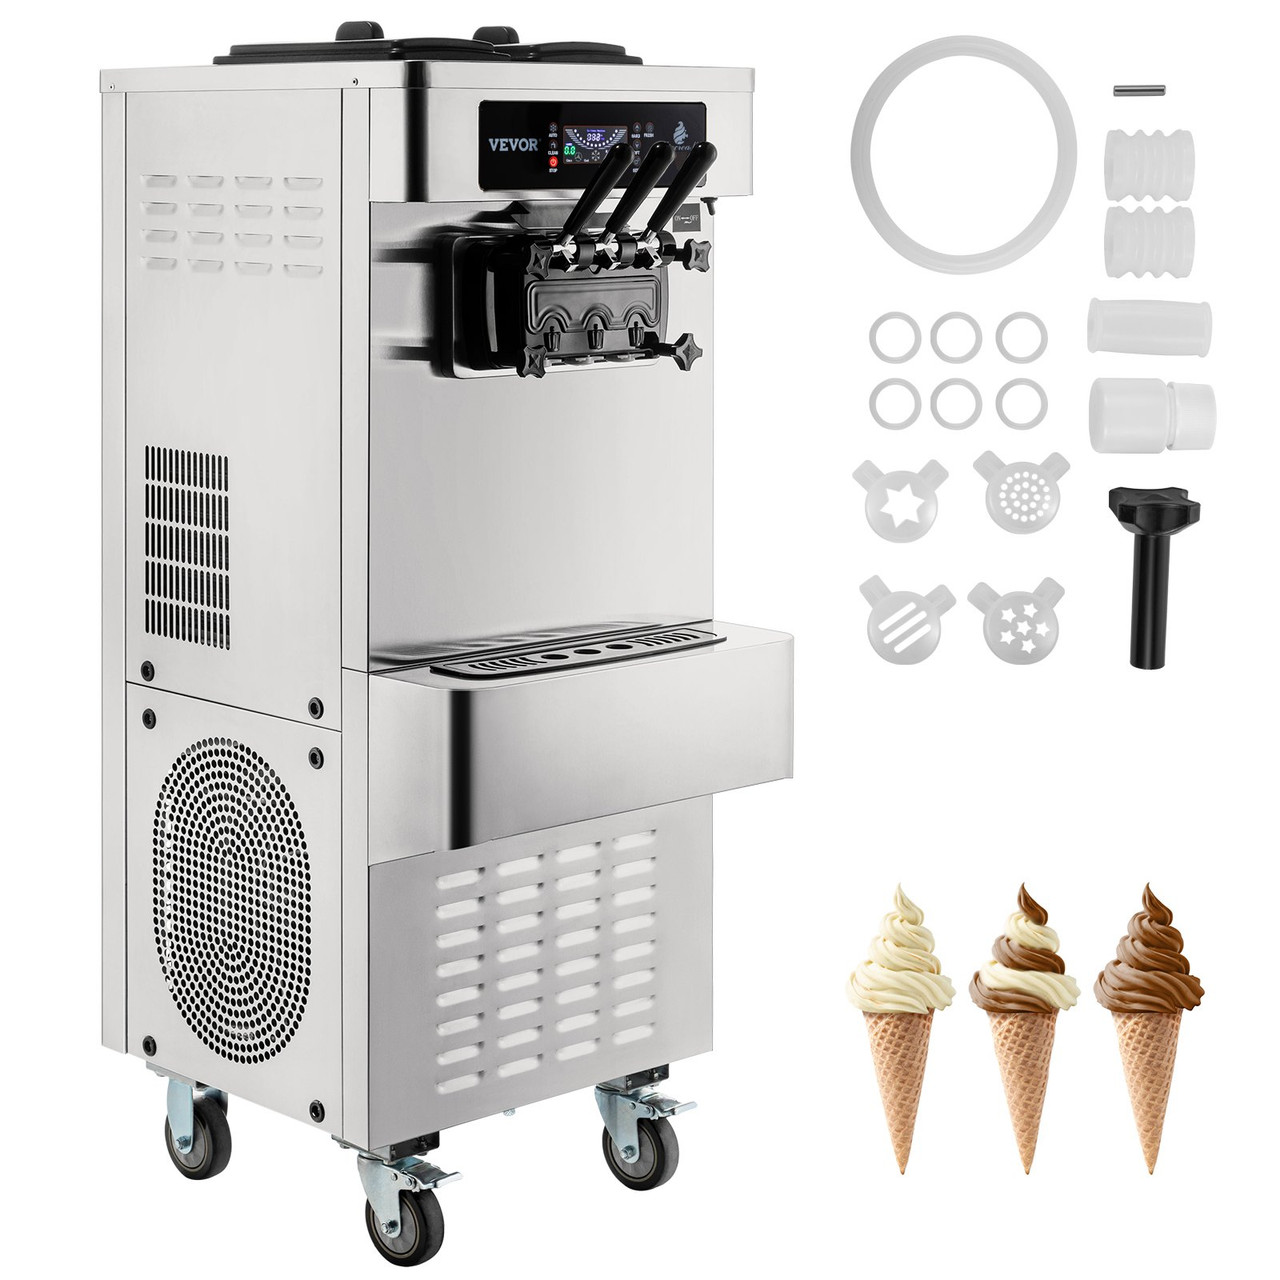 Soft Ice Cream Machine Commercial 3 Flavors Frozen Yogurt Machine